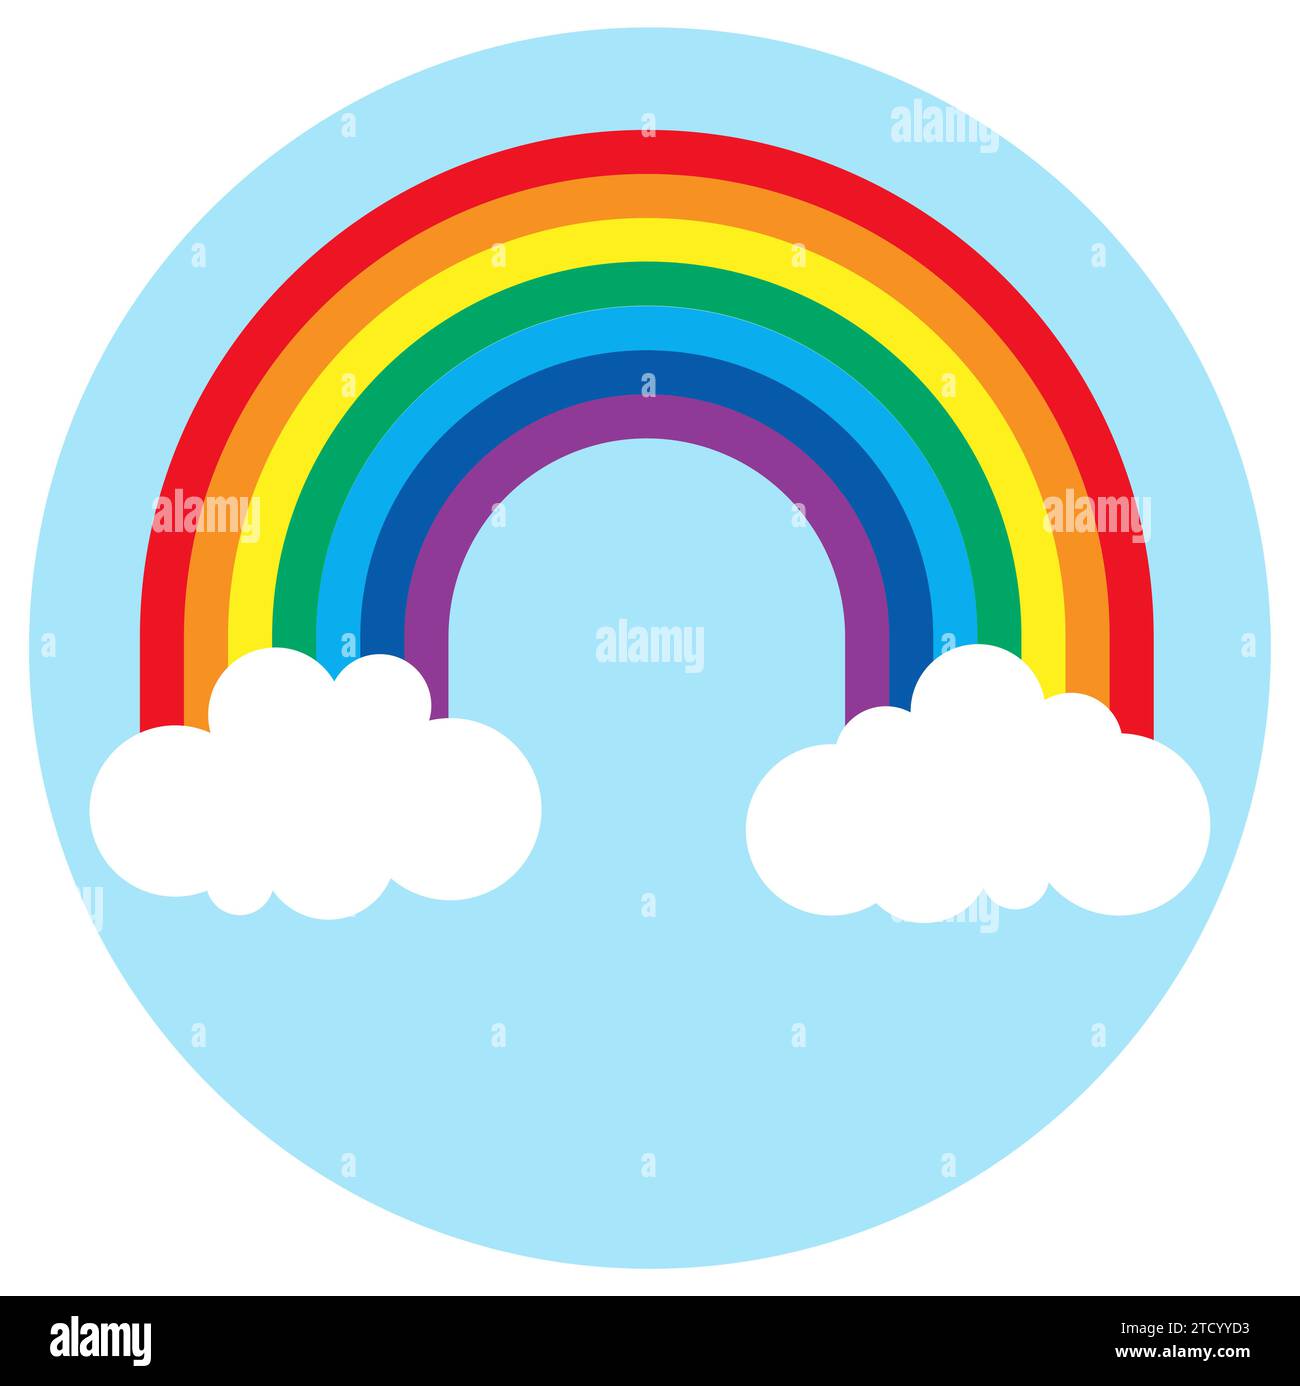 illustrazione vettoriale eps che mostra un meraviglioso arcobaleno colorato con nuvole bianche alle estremità e sfondo blu rotondo Illustrazione Vettoriale